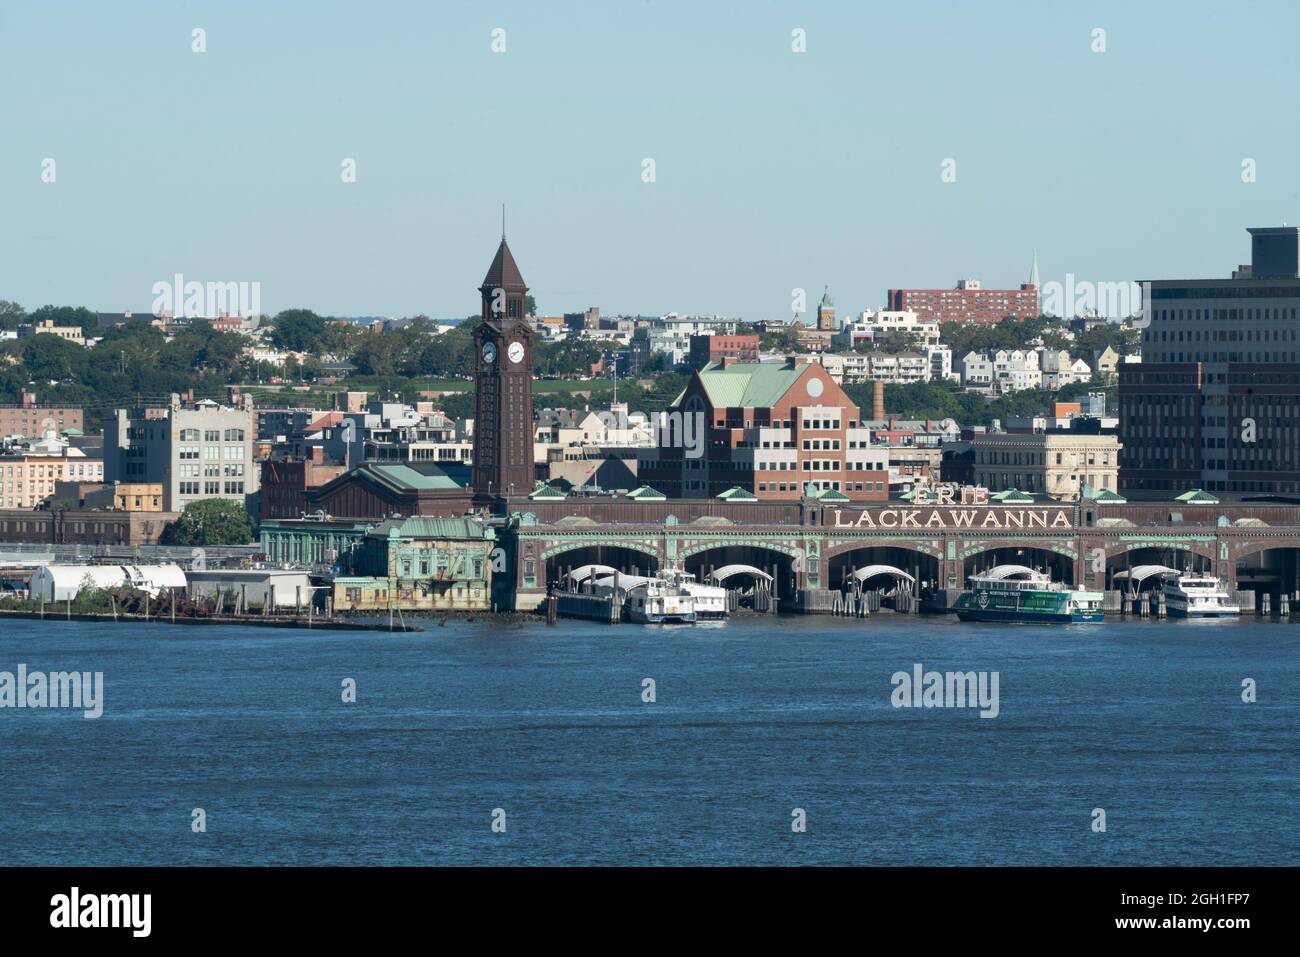 Hoboken se trouve dans le New Jersey, de l'autre côté du fleuve Hudson depuis Lower Manhattan. À la fin du XIXe siècle, les lignes de navigation utilisaient Hoboken comme port terminal Banque D'Images